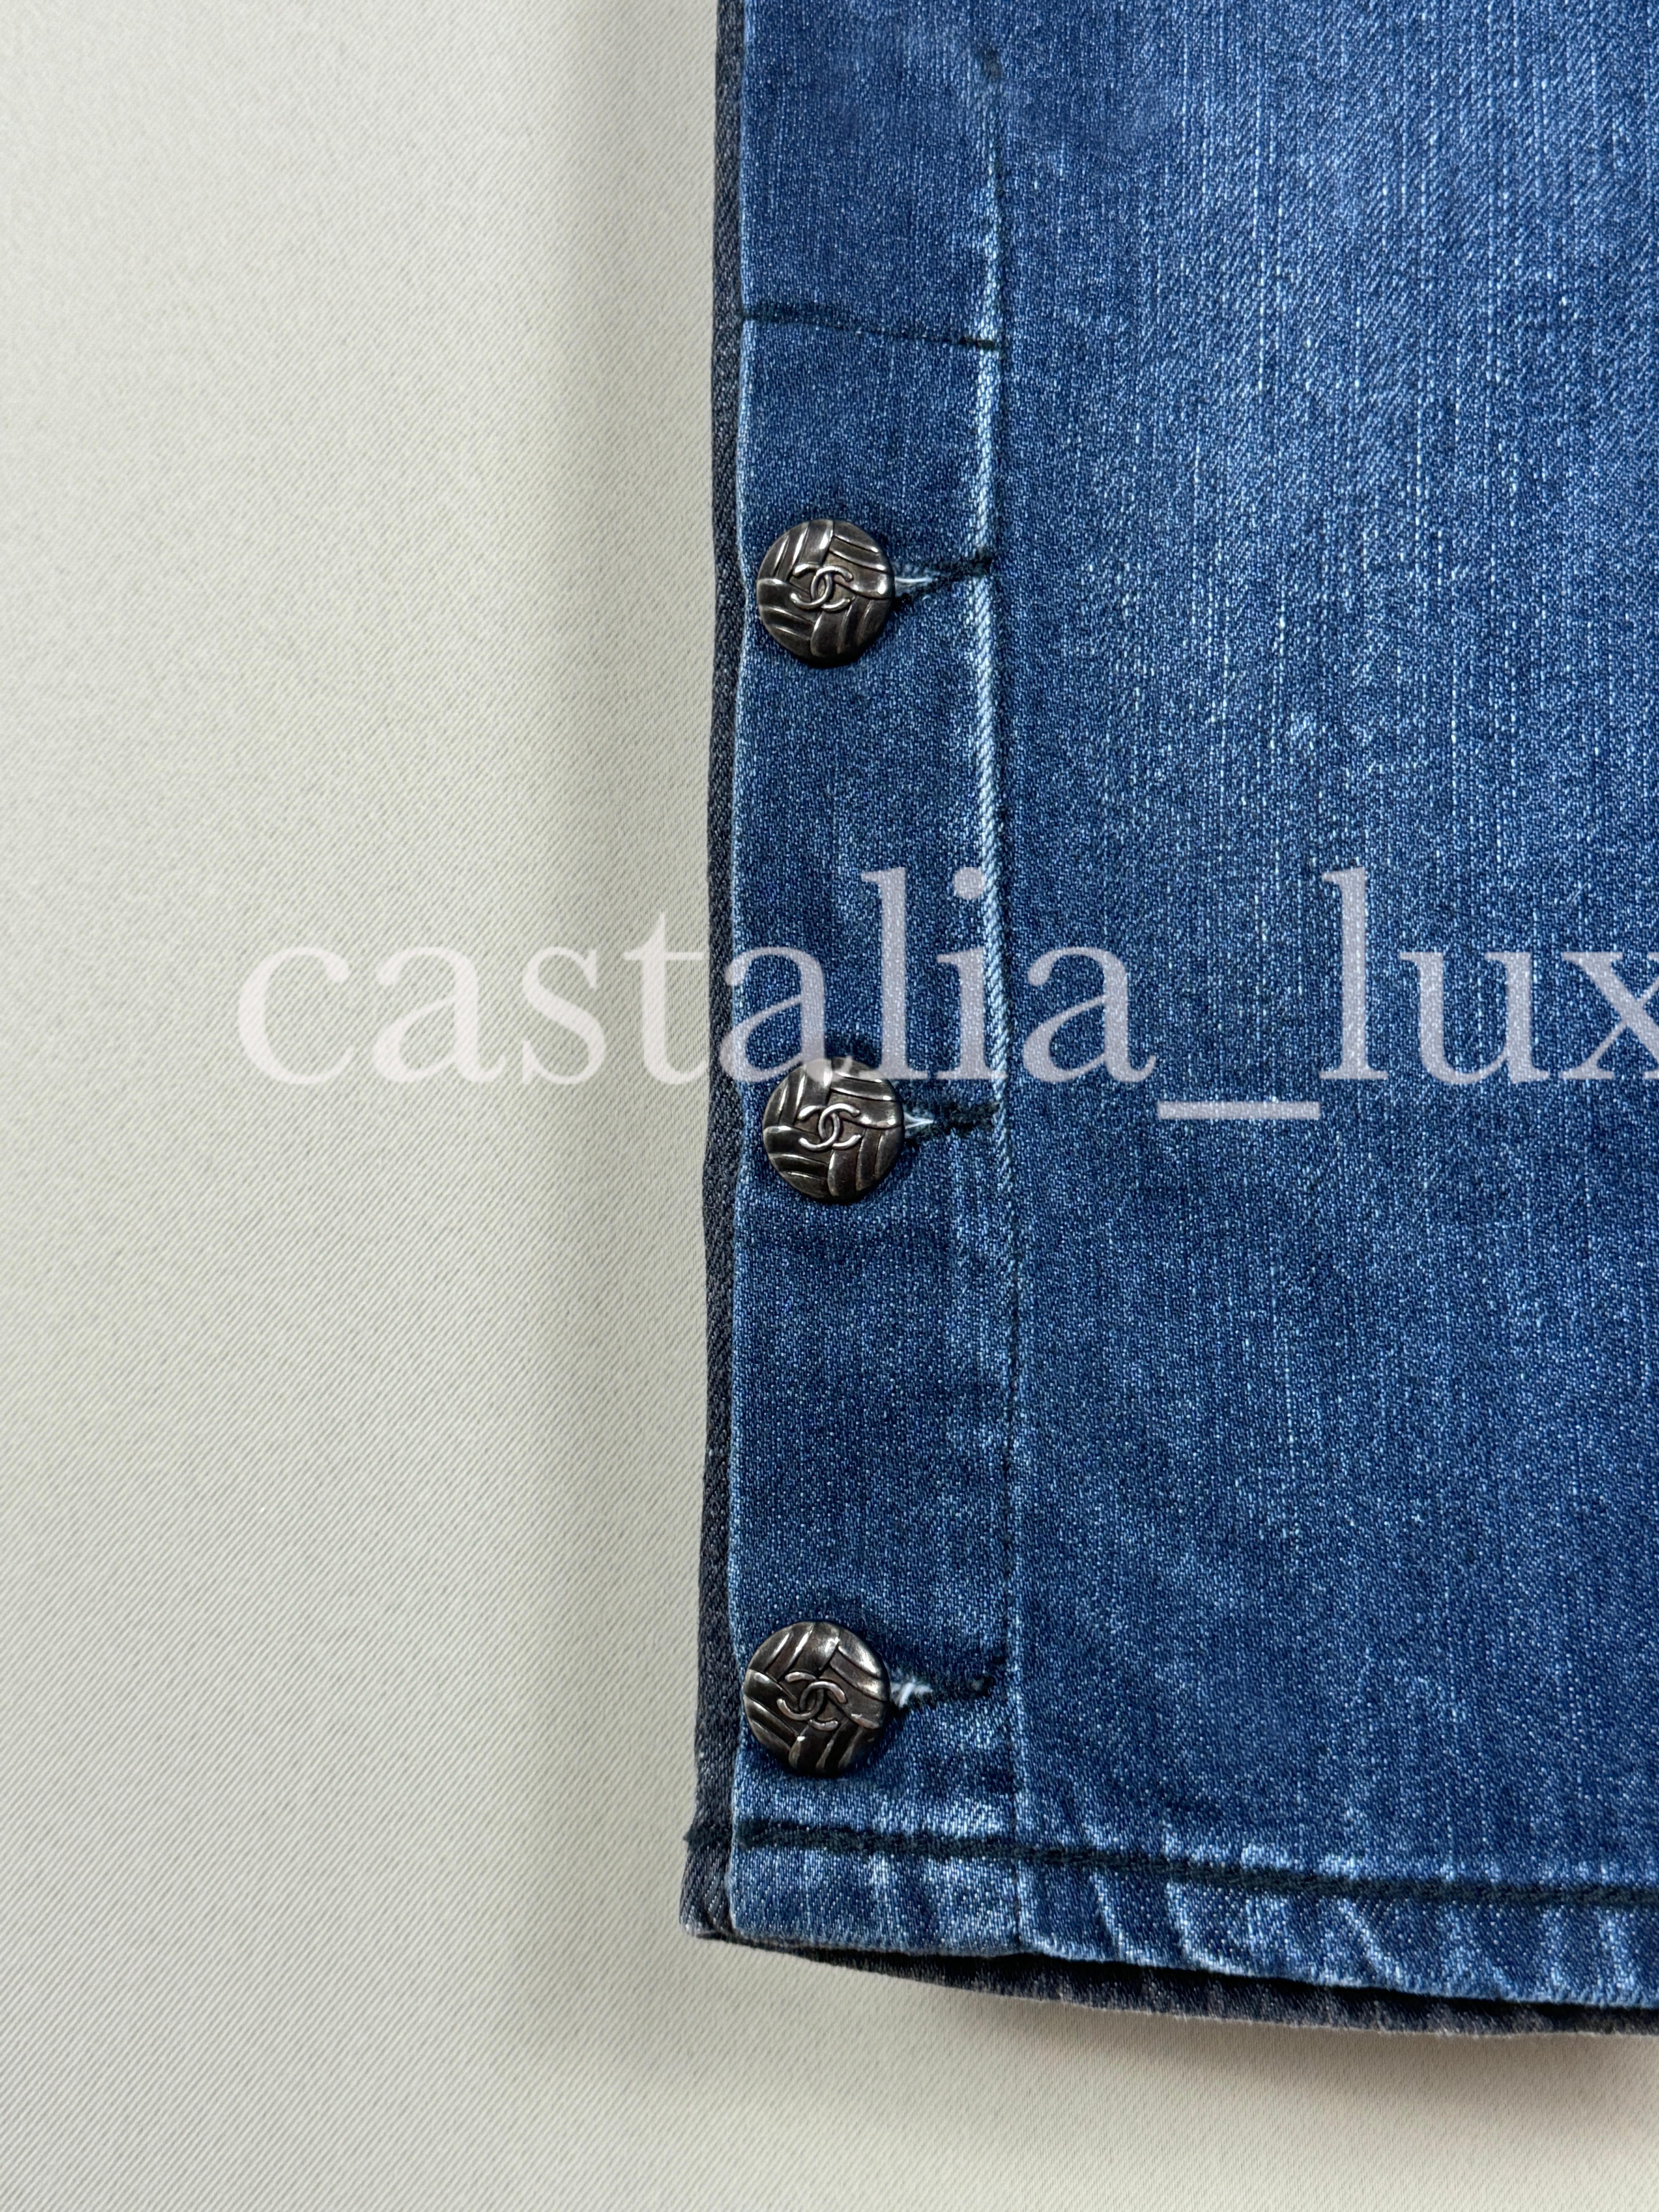 Gerade, zweifarbige Chanel-Jeans (vorne in Blau, hinten in Schwarz) mit gesteppten CC-Logo-Knöpfen am Saum.
Boutique-Preis 2.200€
Größenbezeichnung 36 FR. Tadellos, Zustand.